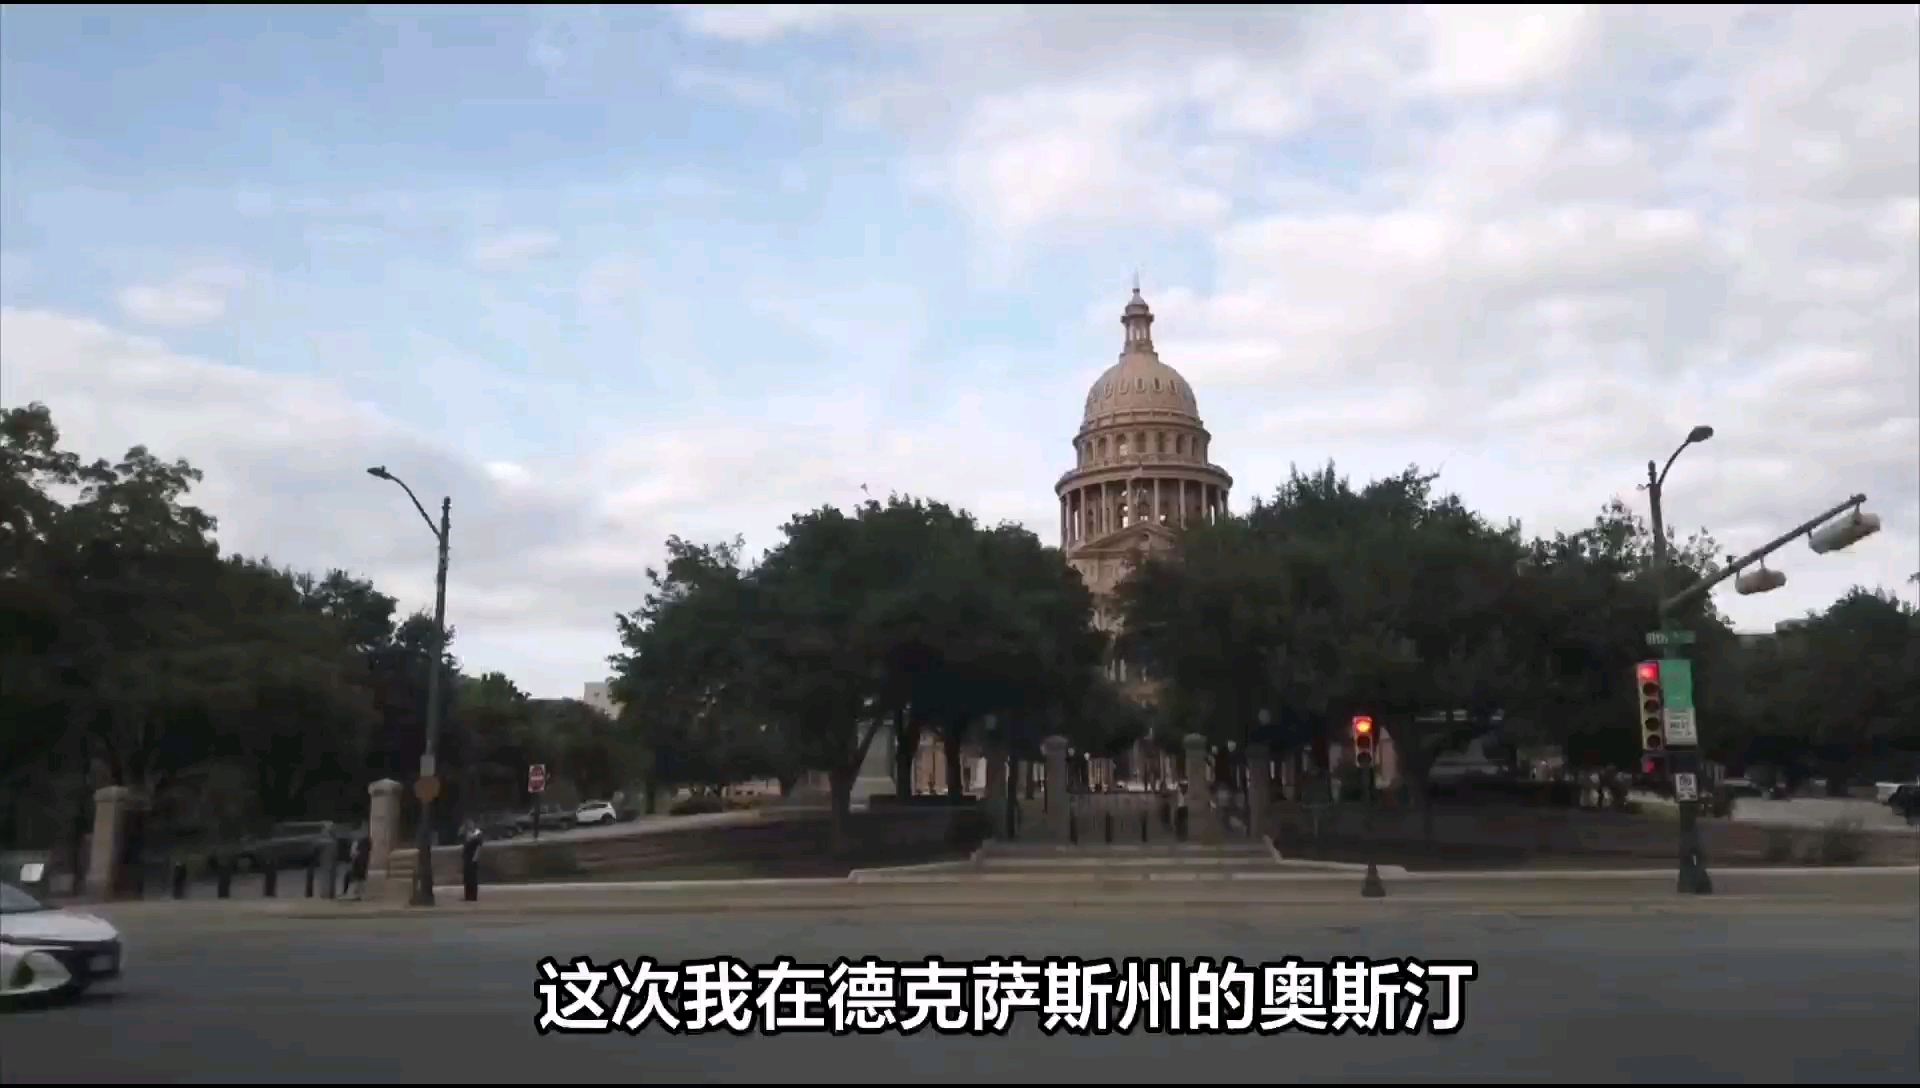 德克萨斯州议会大厦：展现南部风情与政治历史